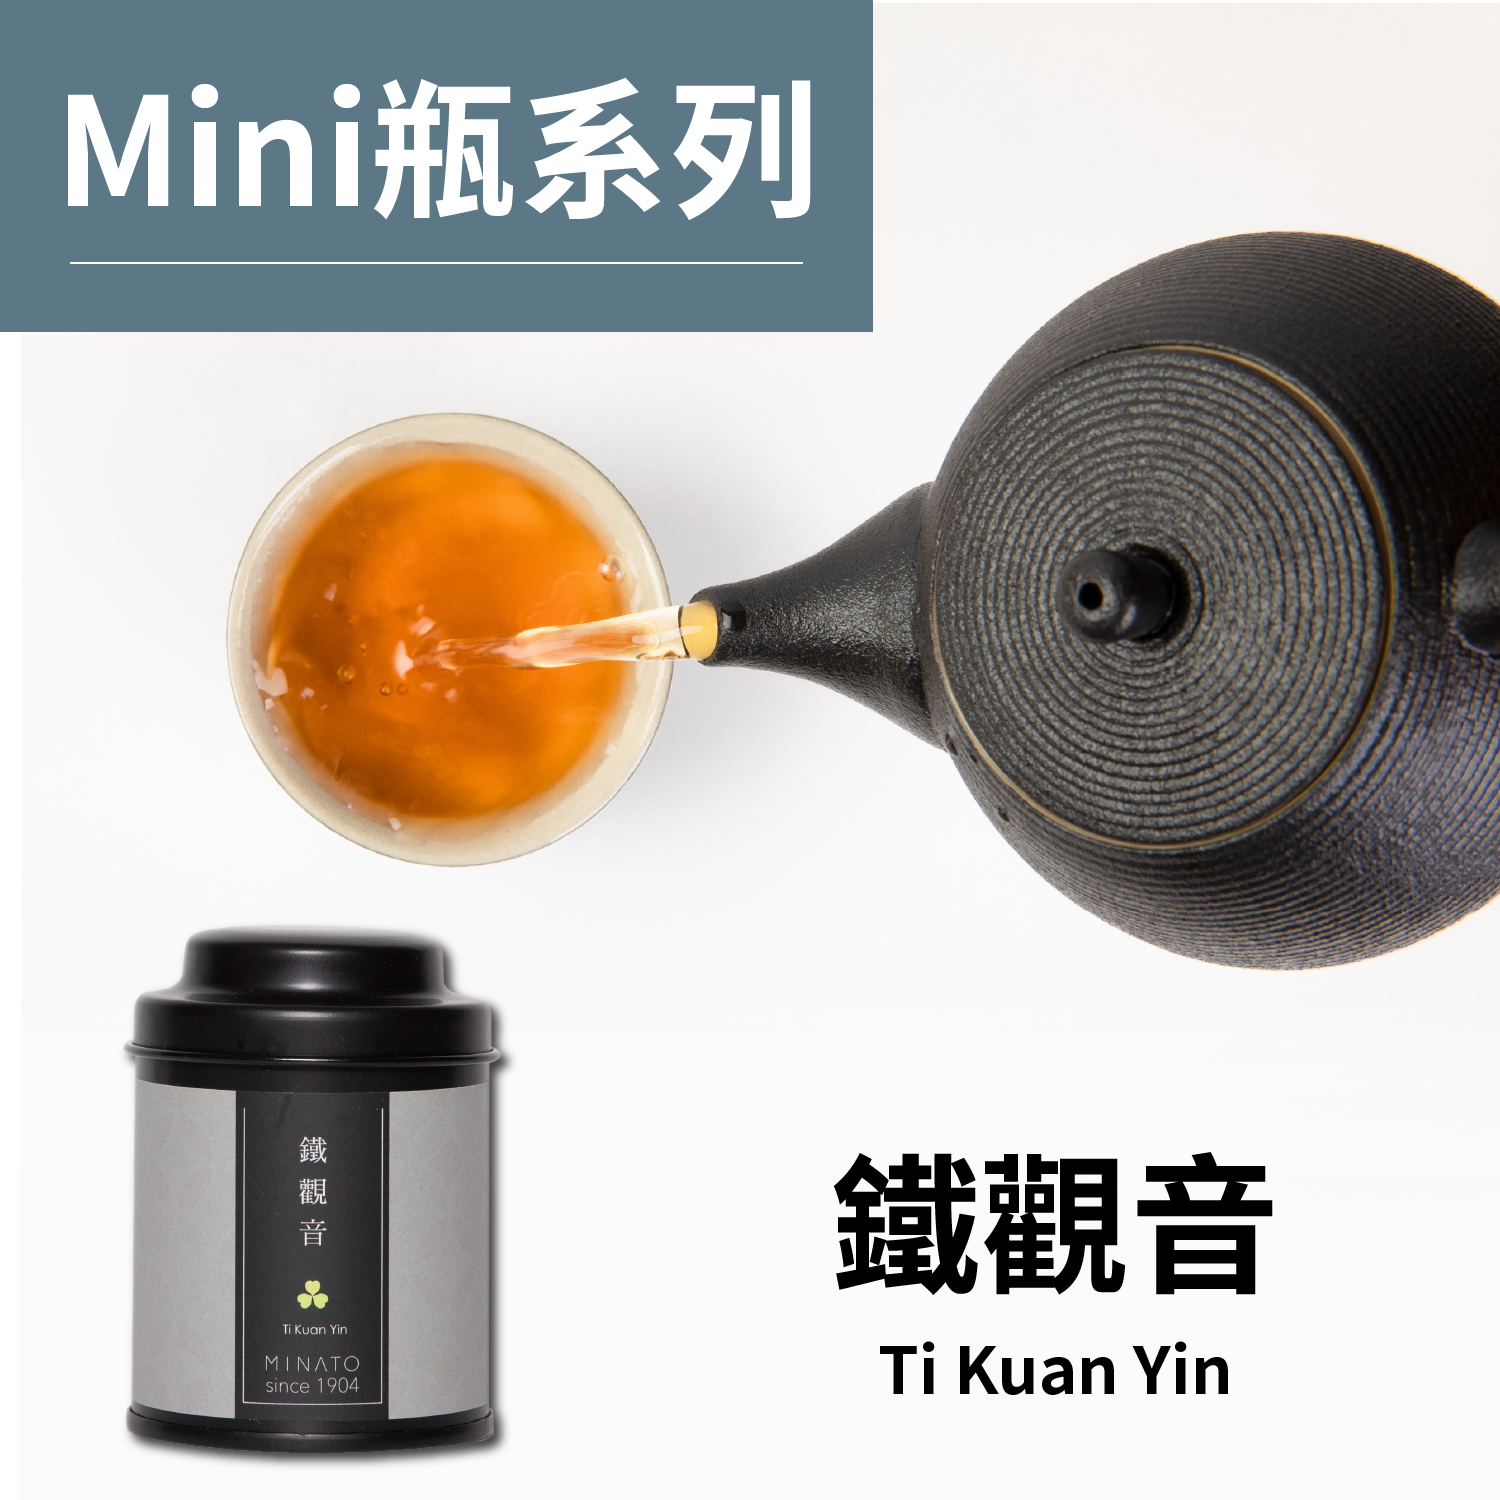 茶粒茶 原片茶葉 Mini黑罐-鐵觀音 18g